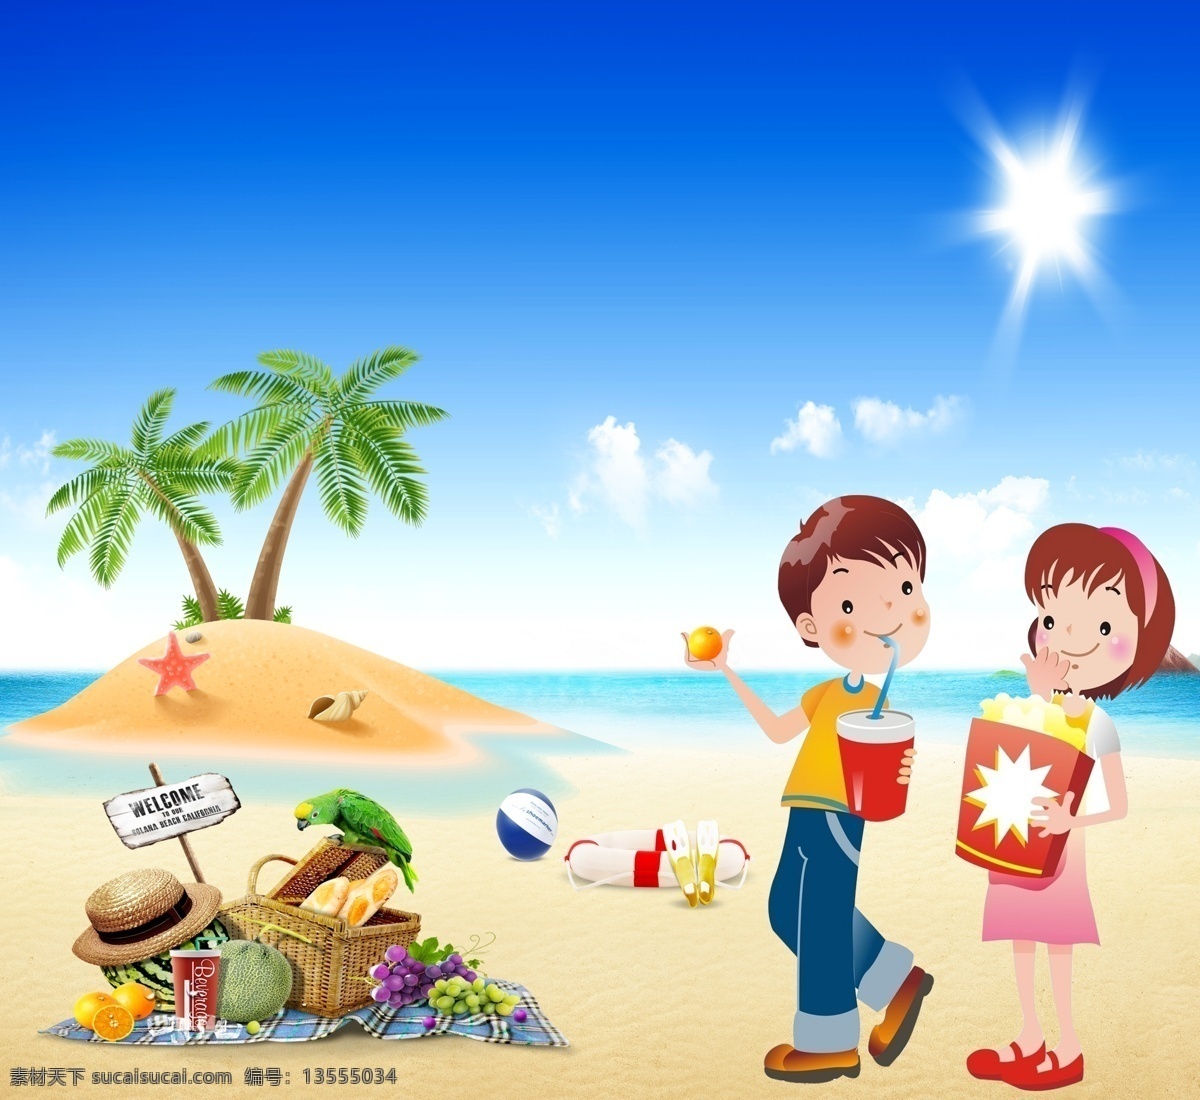 阳光沙滩 阳光 沙滩 背景 椰树 人物